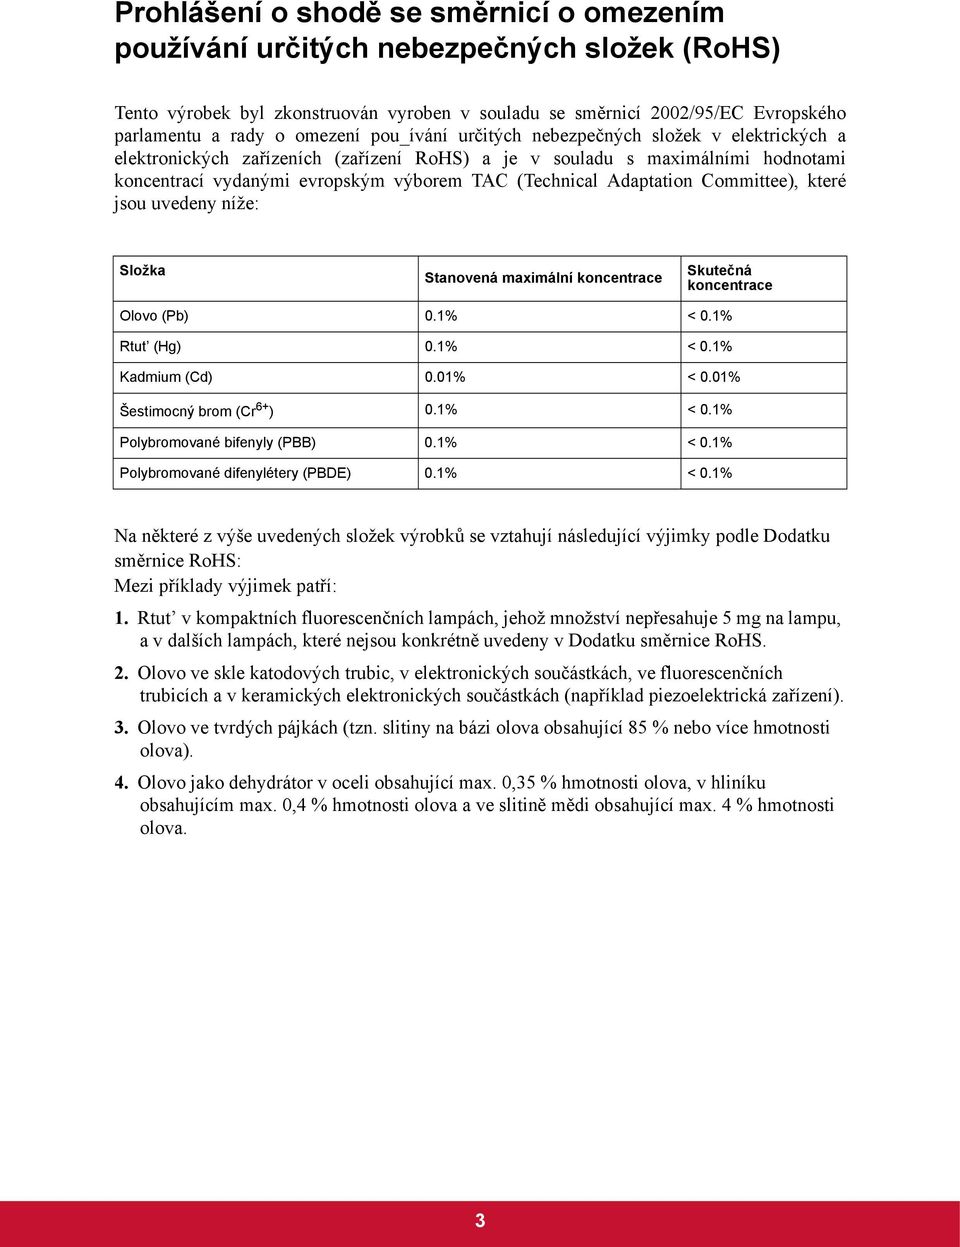 Adaptation Committee), které jsou uvedeny níže: Složka Stanovená maximální koncentrace Skutečná koncentrace Olovo (Pb) 0.1% < 0.1% Rtut (Hg) 0.1% < 0.1% Kadmium (Cd) 0.01% < 0.